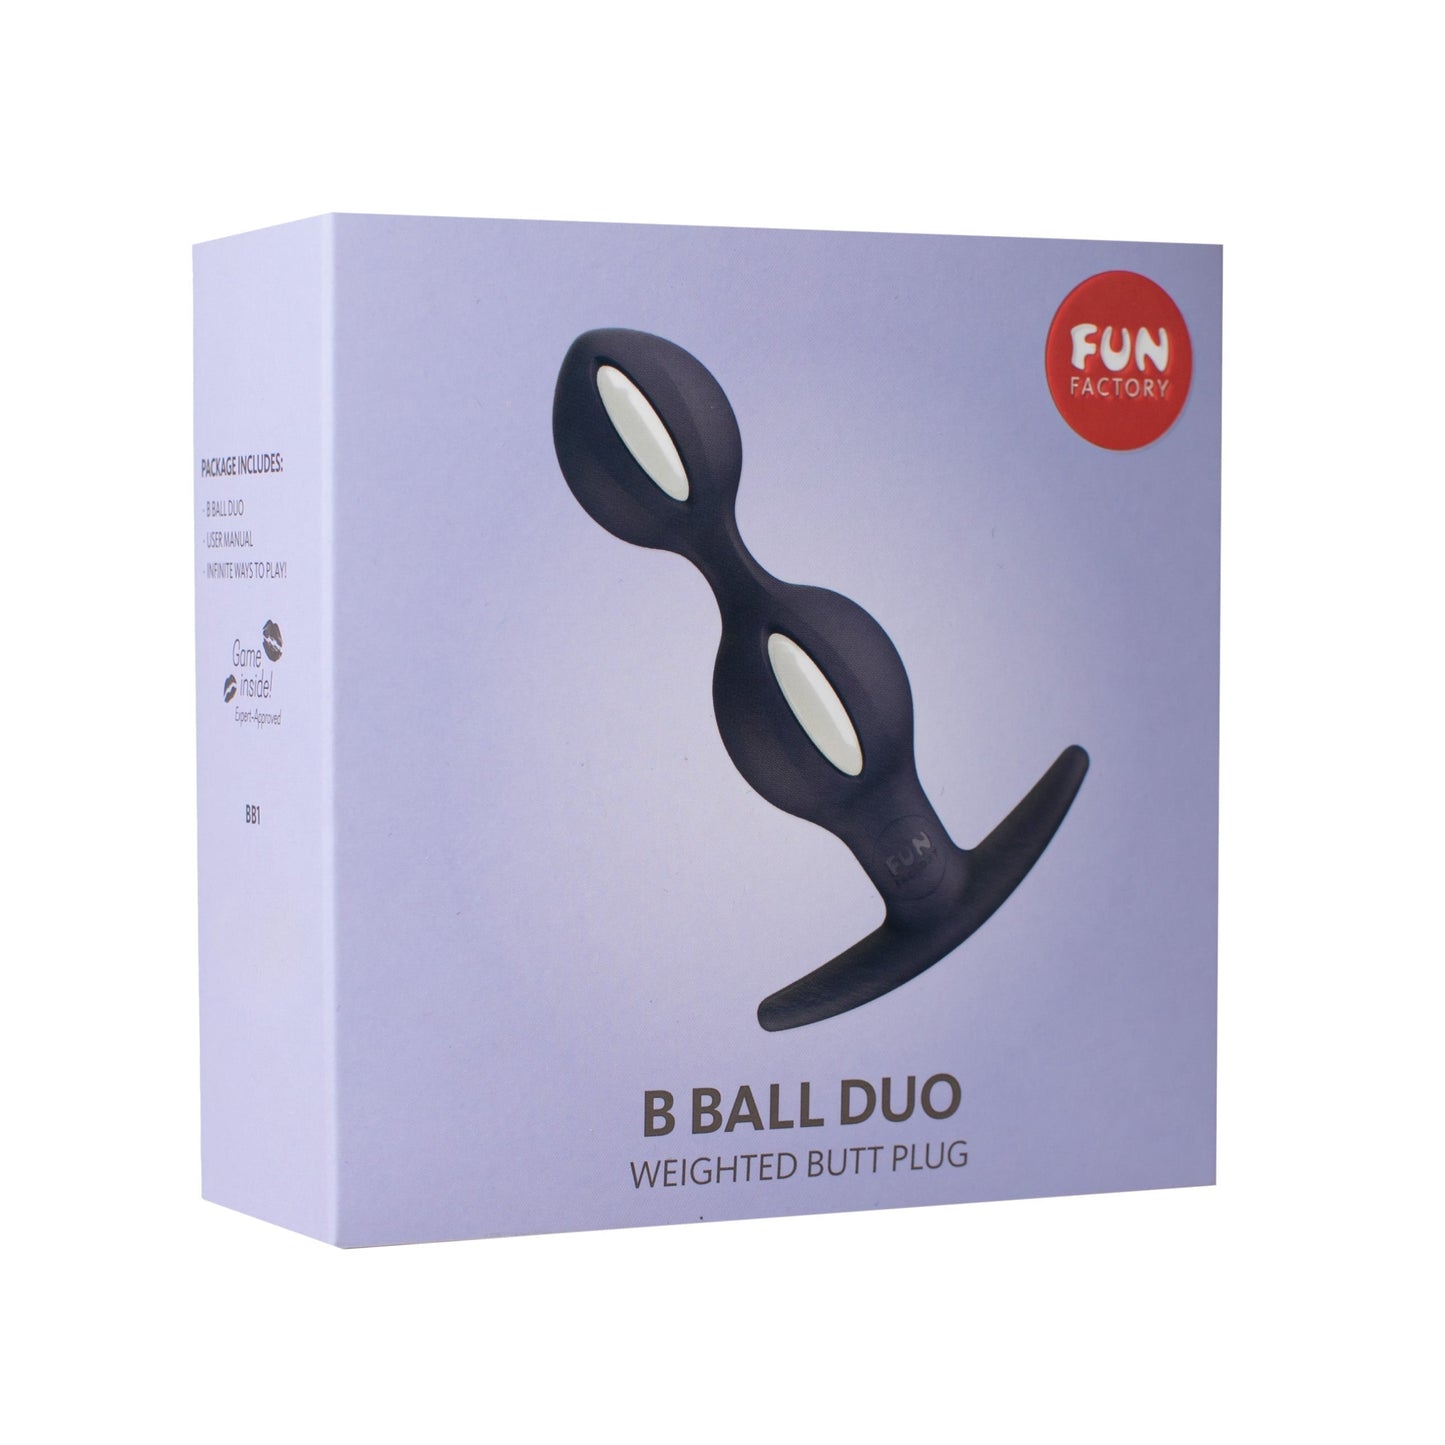 Fun Factory B Ball DUO Reactive Anal Plug - XOXTOYS